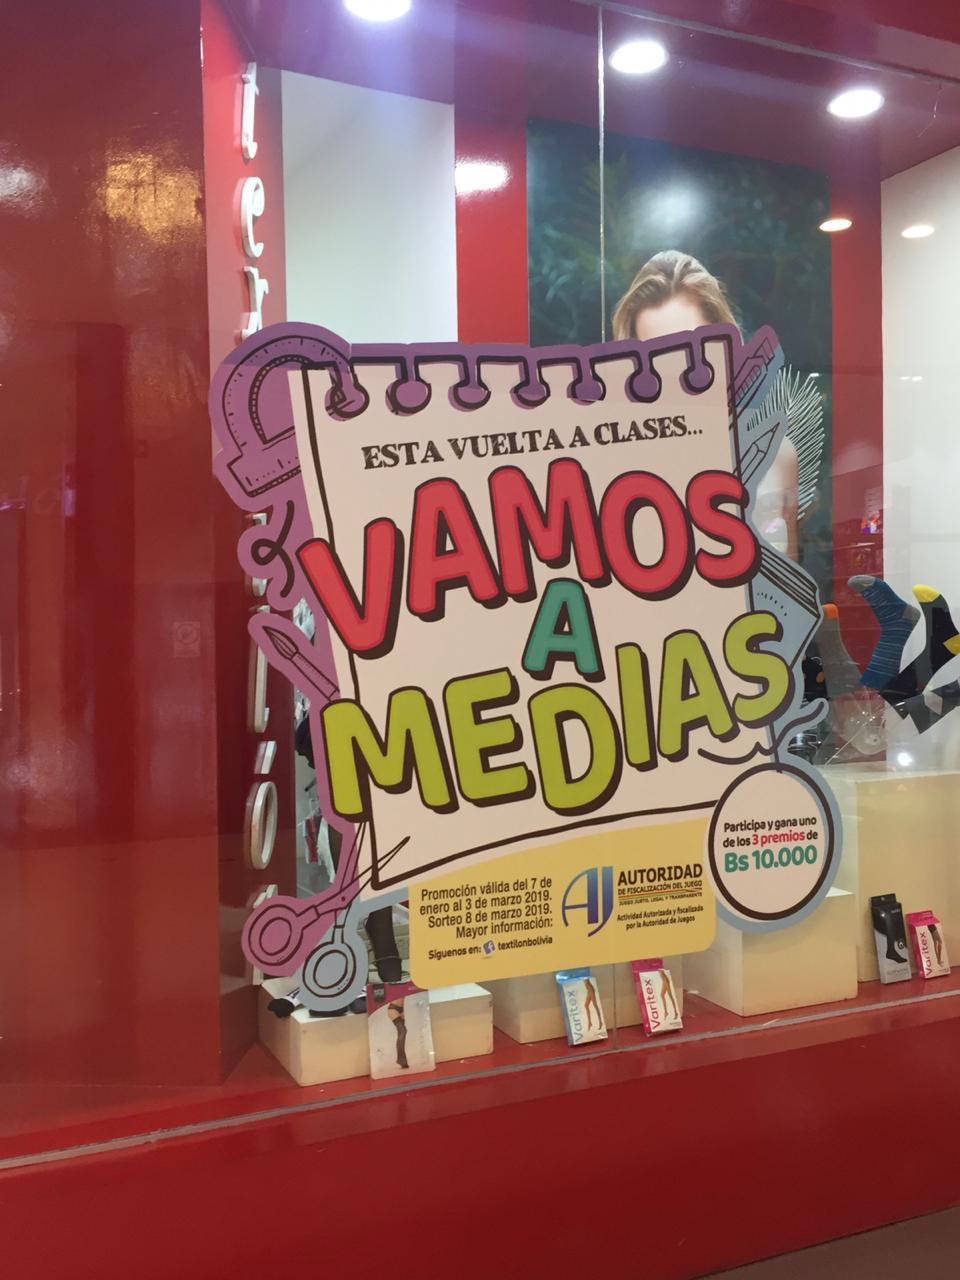 Textilón lanza campaña de vuelta a clases “Vamos a Medias”